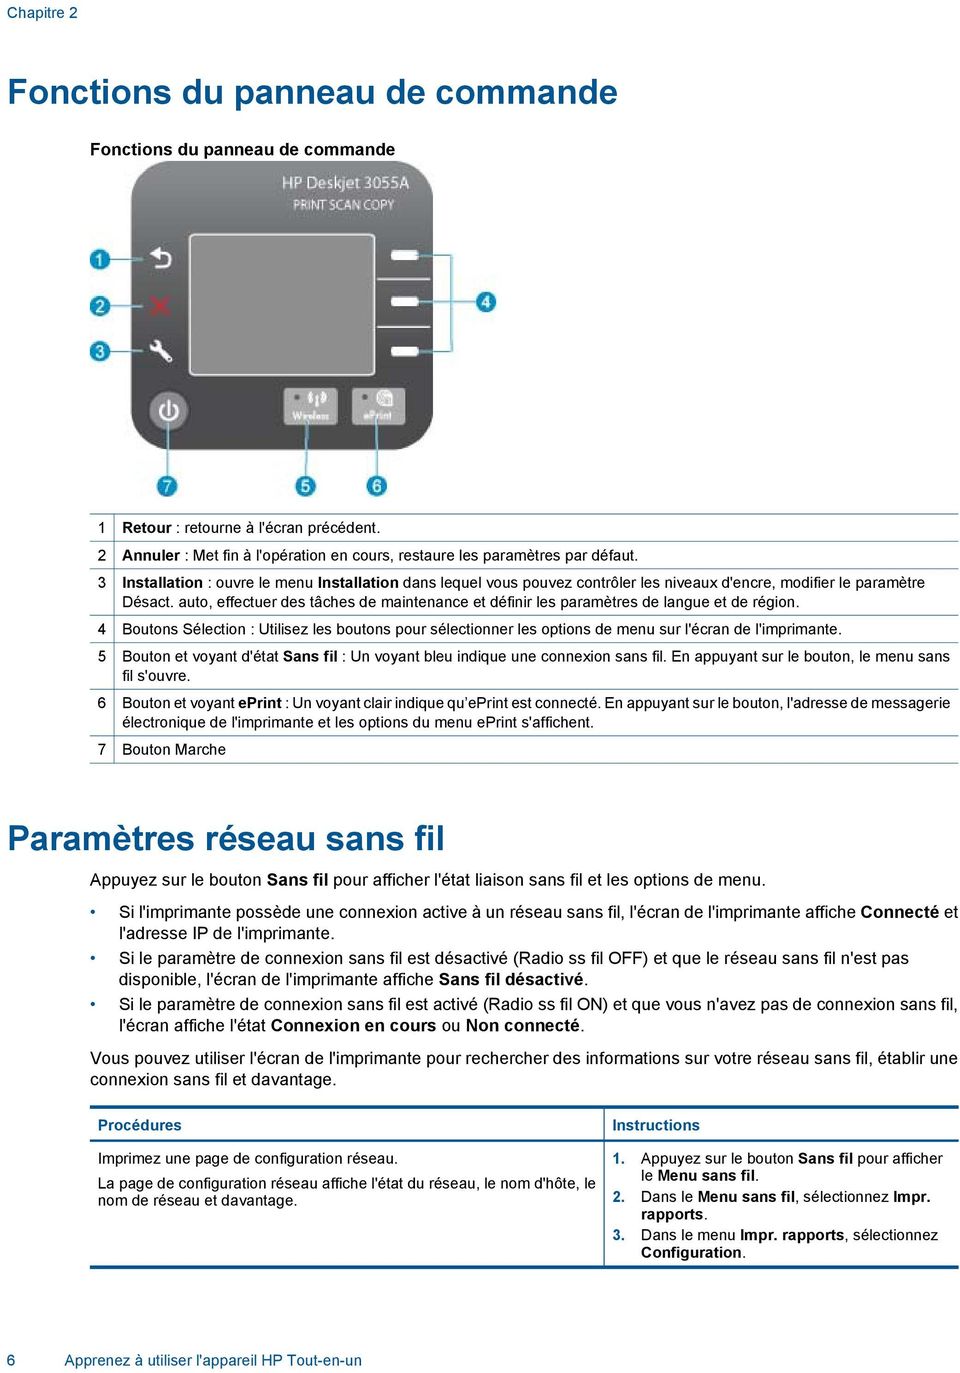 HP Deskjet 3050A série J611 - PDF Free Download